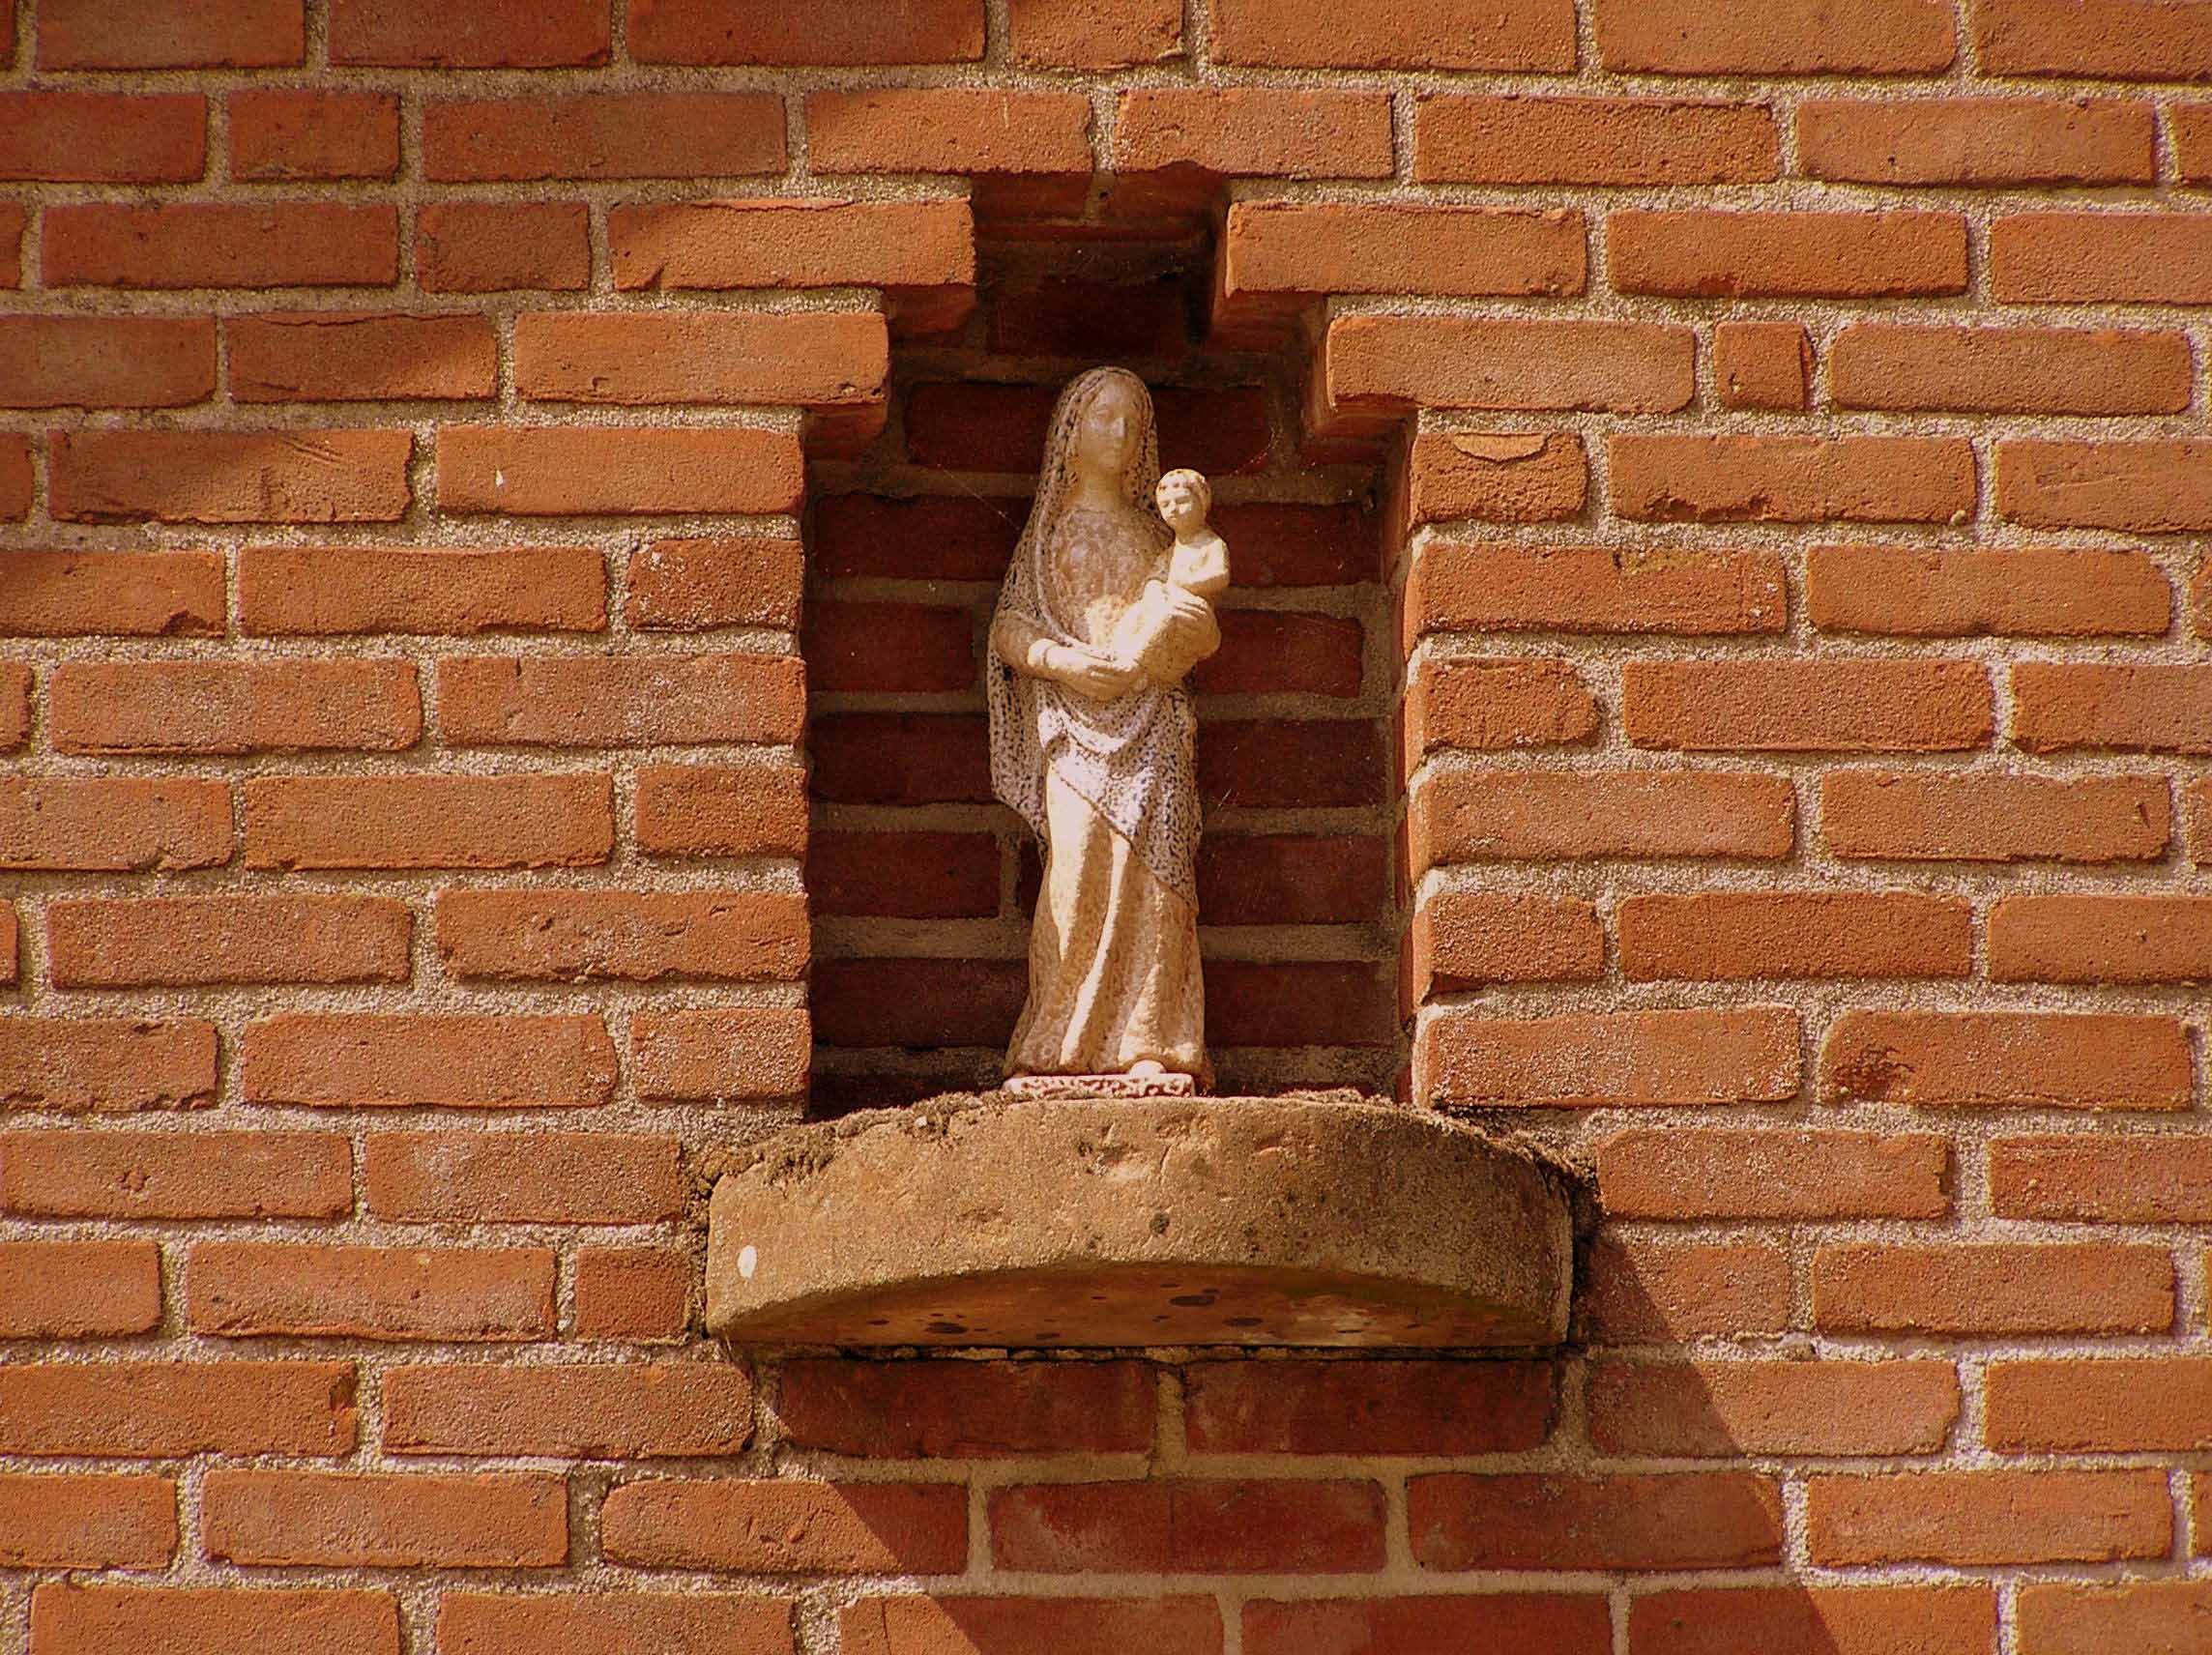 4. Mariabeeld in gevel schuur erve Enkman aan de Ootmarsumsestraat in Tilligte